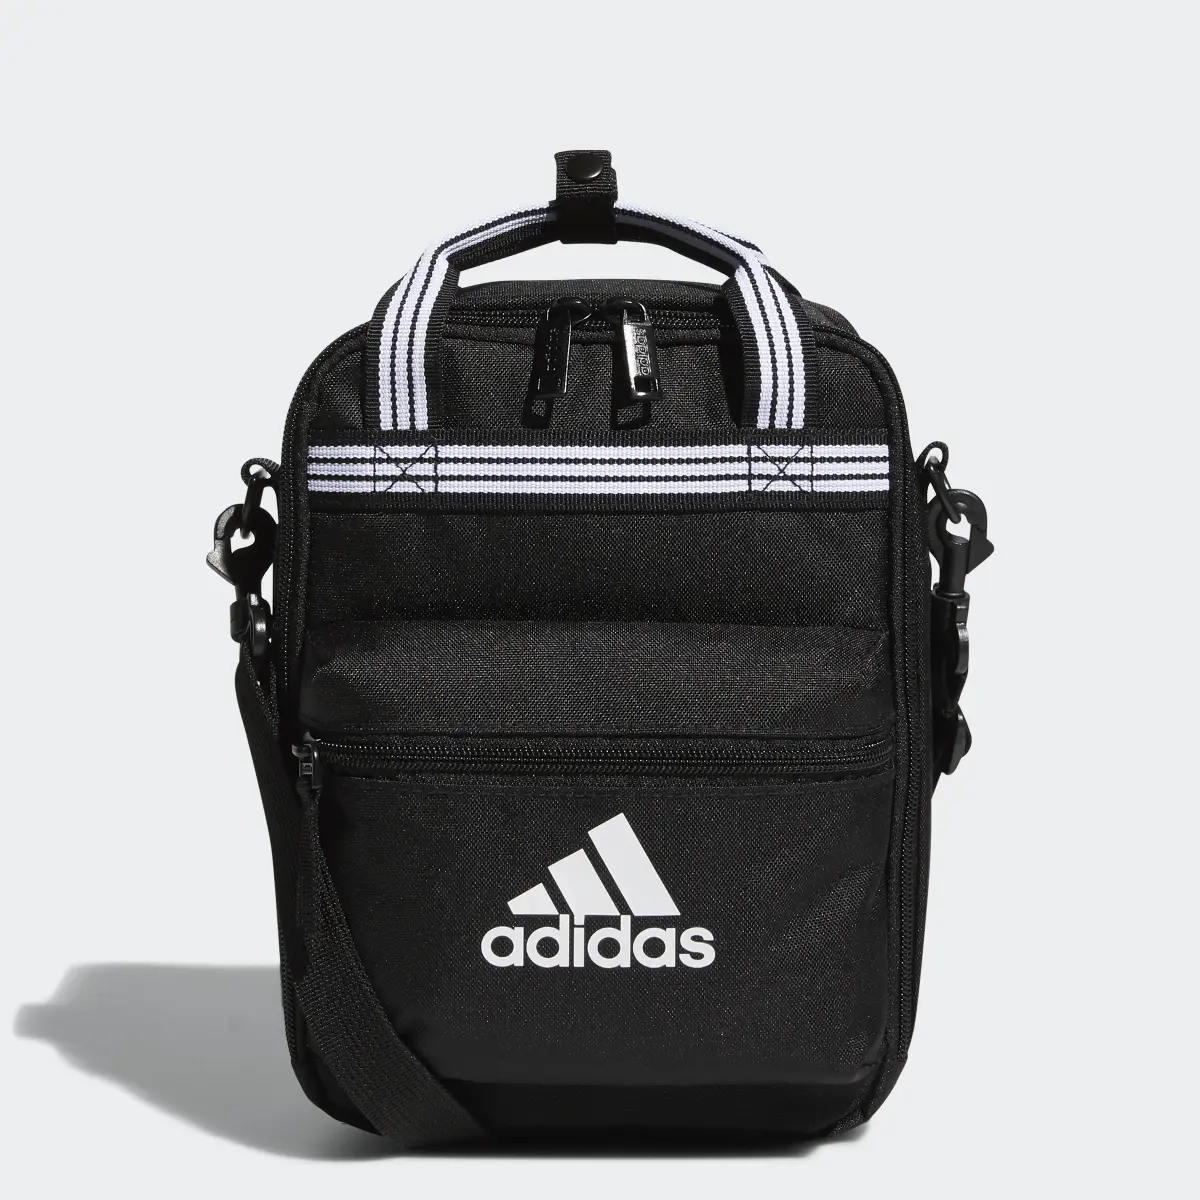 Adidas Squad Lunch Bag. 1